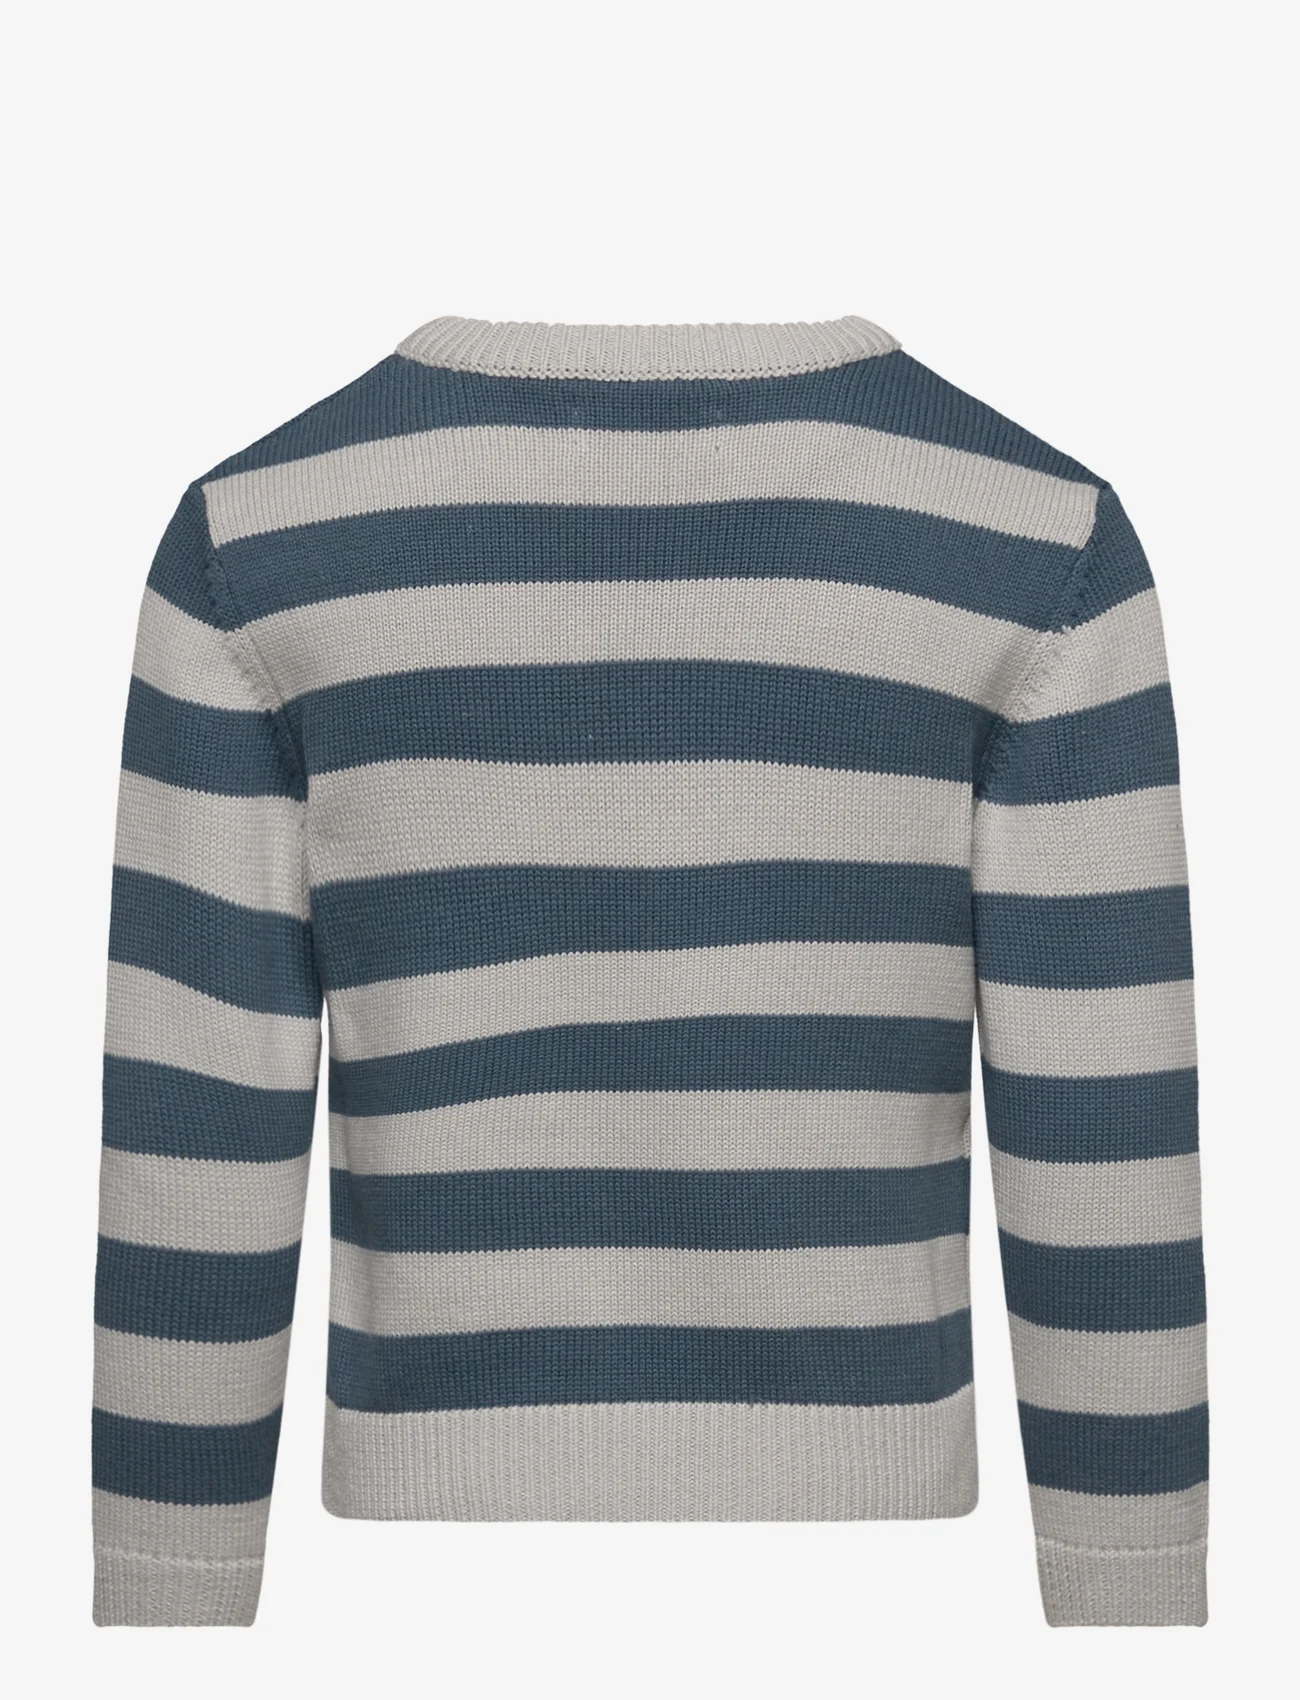 Mango - Striped knit sweater - gensere - dark blue - 1